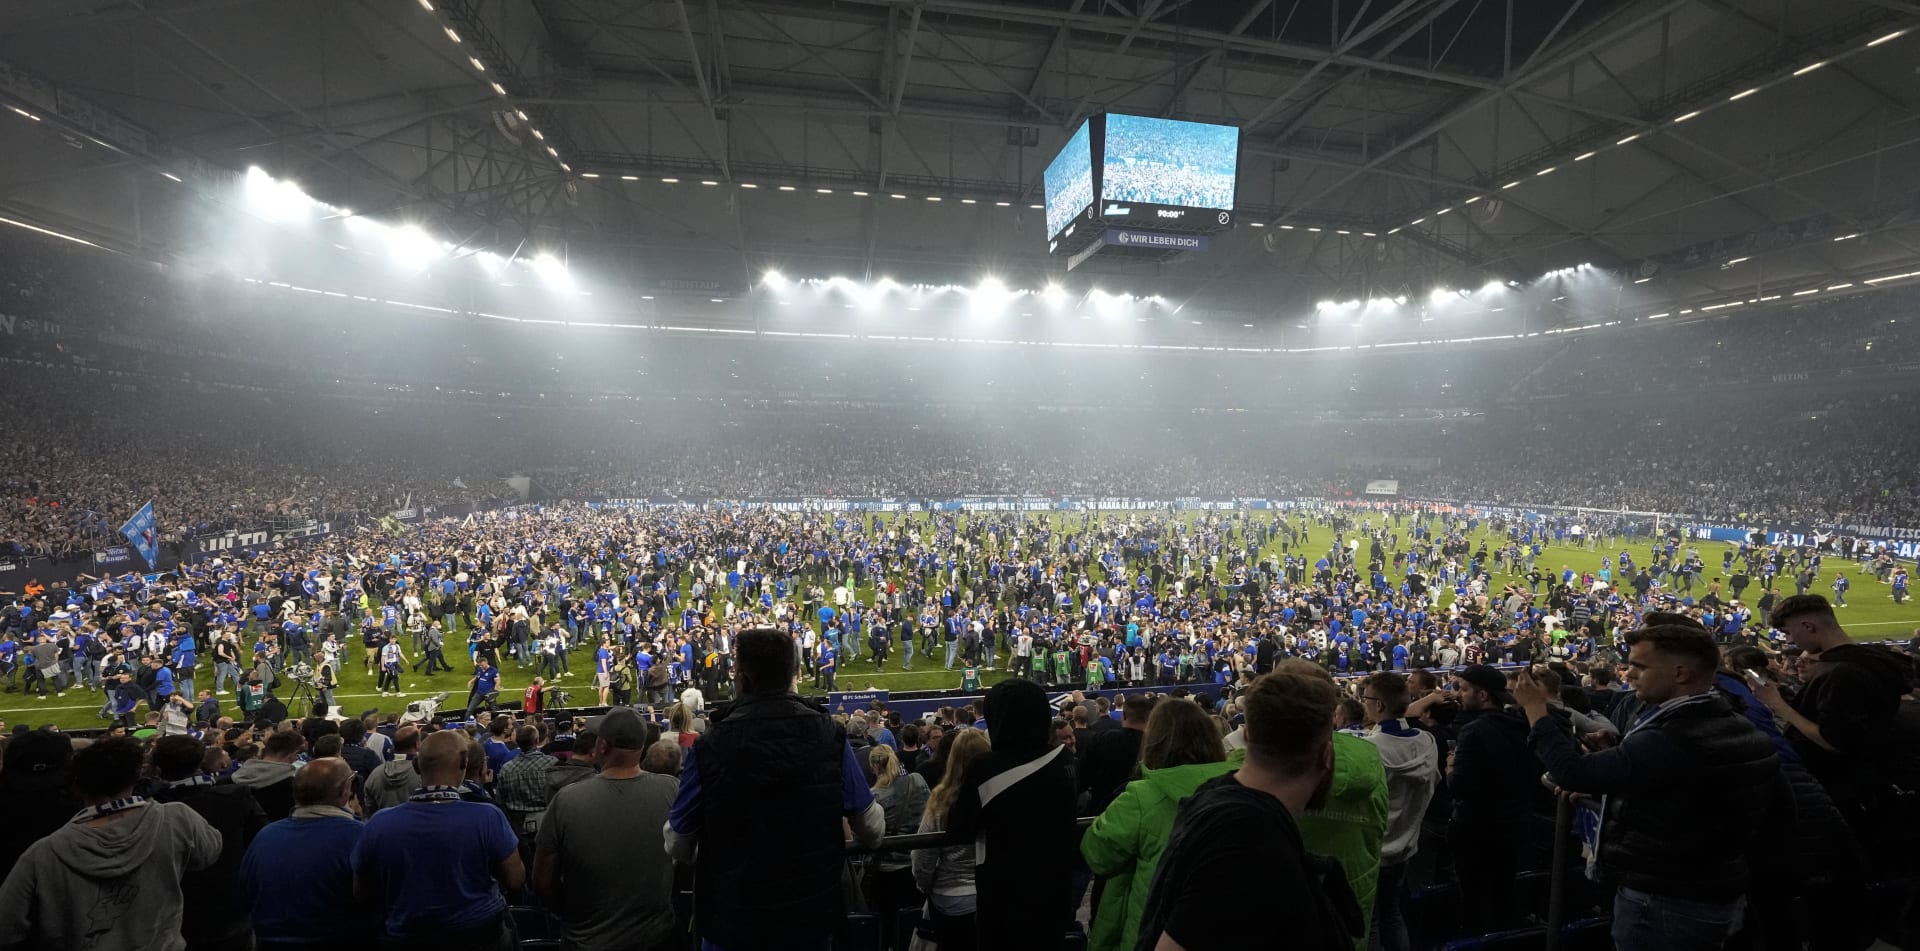 Fanoušci německého fotbalového klubu Schalke 04 zaplavili po vítězném utkání 3:2 nad FC St. Pauli ve druhé bundeslize na trávník Veltins Areny v Gelsenkirchenu téměř celé hřiště, aby oslavili postup do nejvyšší soutěže. Na tribunách však někteří lidé bojovali o život. 